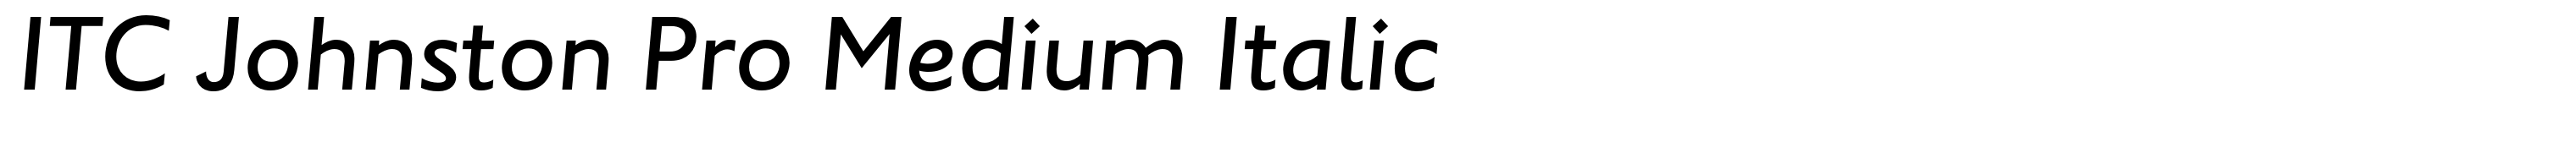 ITC Johnston Pro Medium Italic